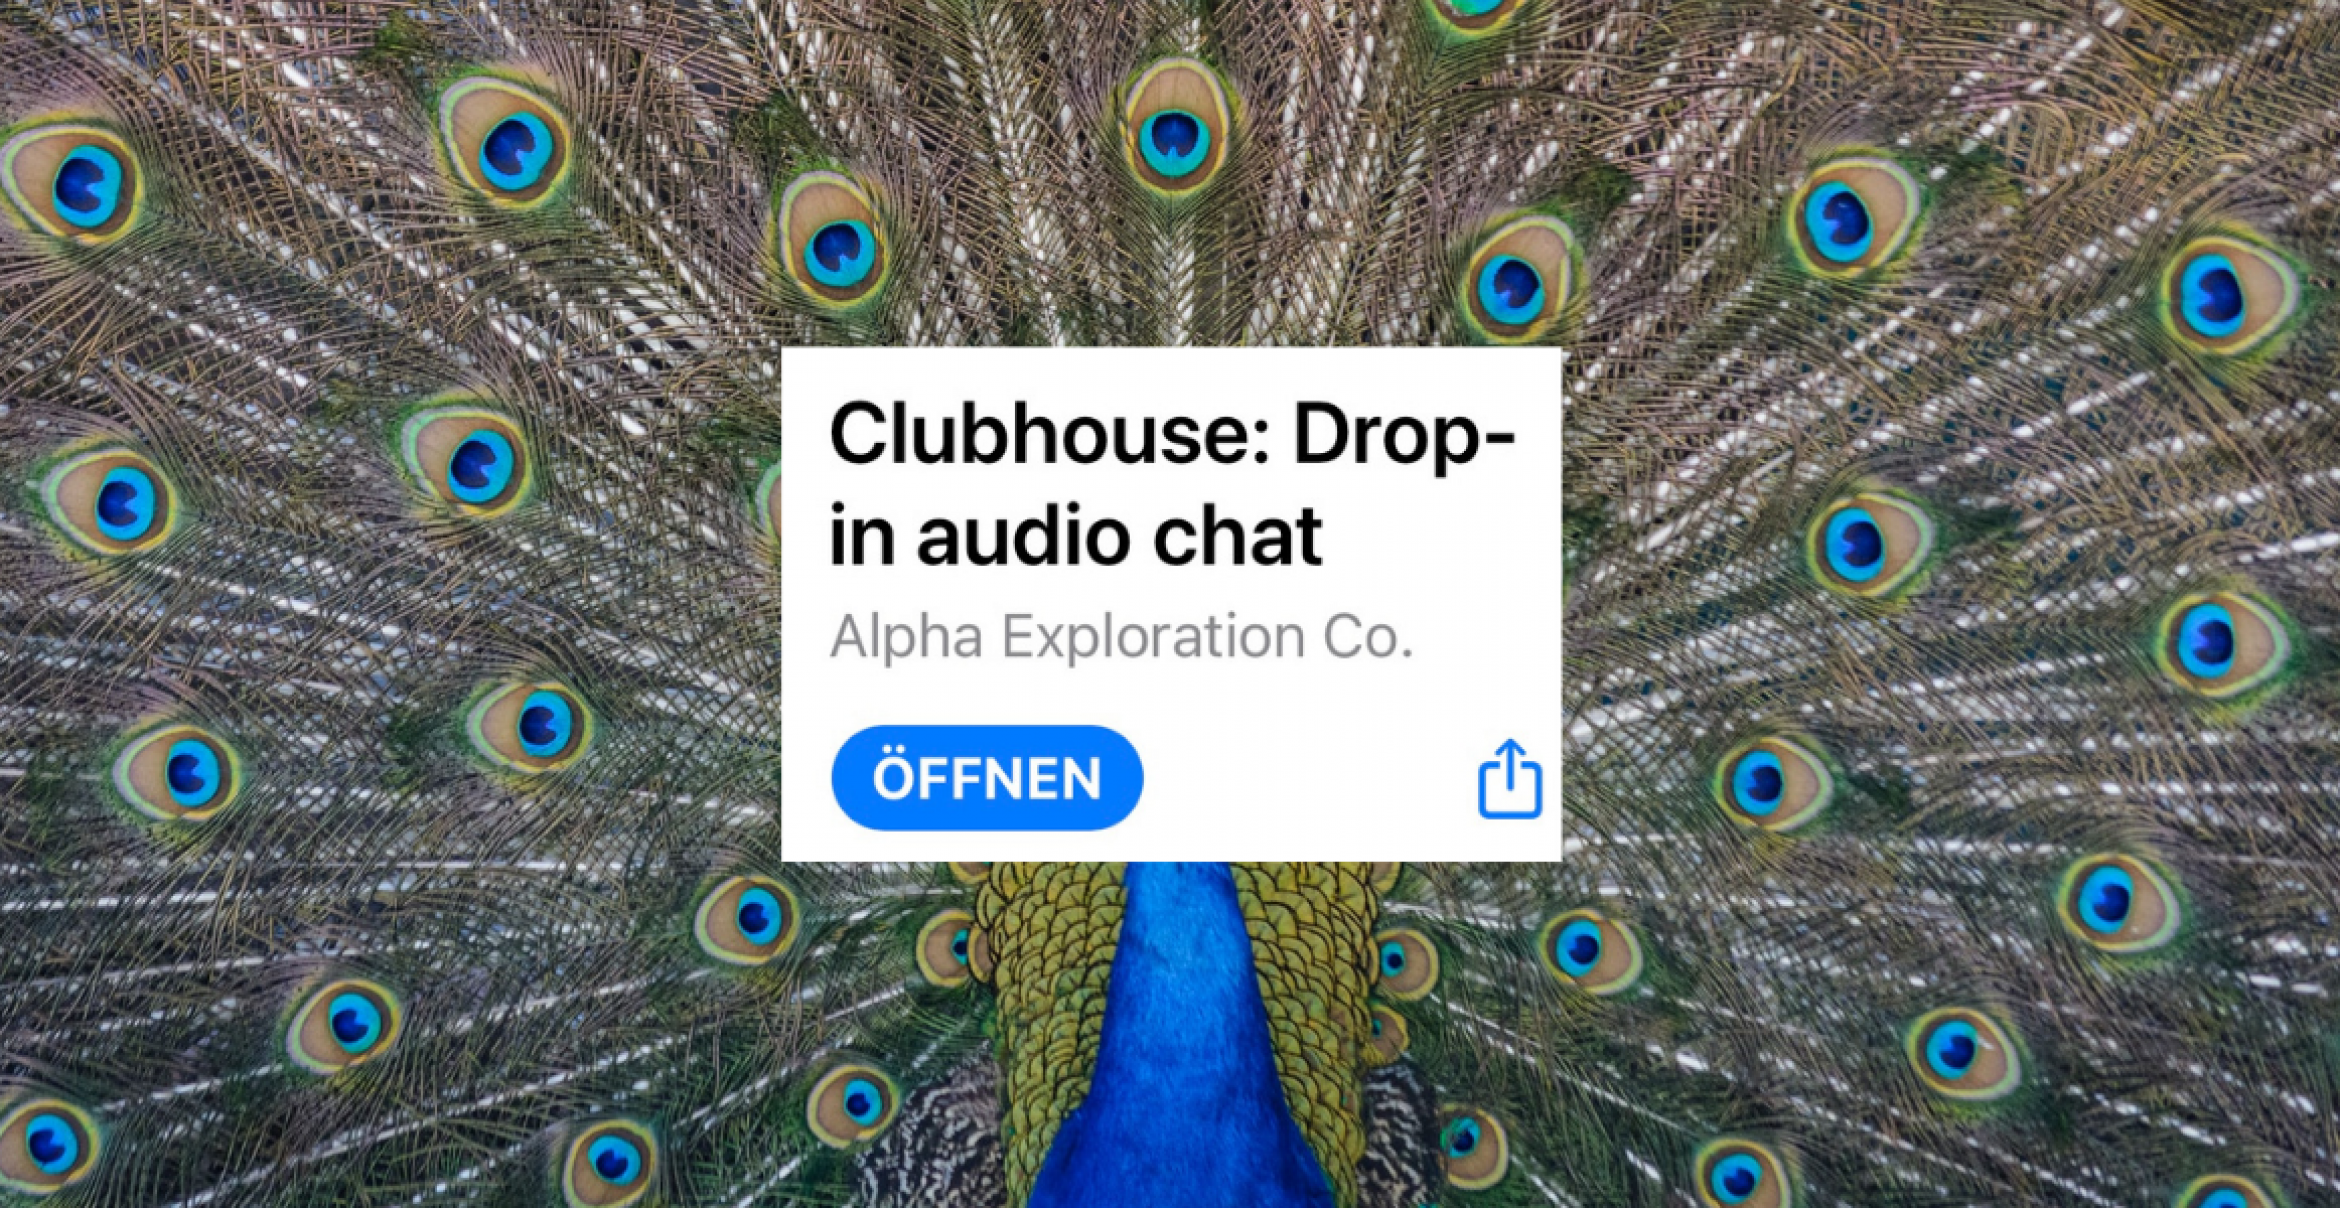 Talks für alle: Clubhouse ist jetzt ohne Einladung zugänglich